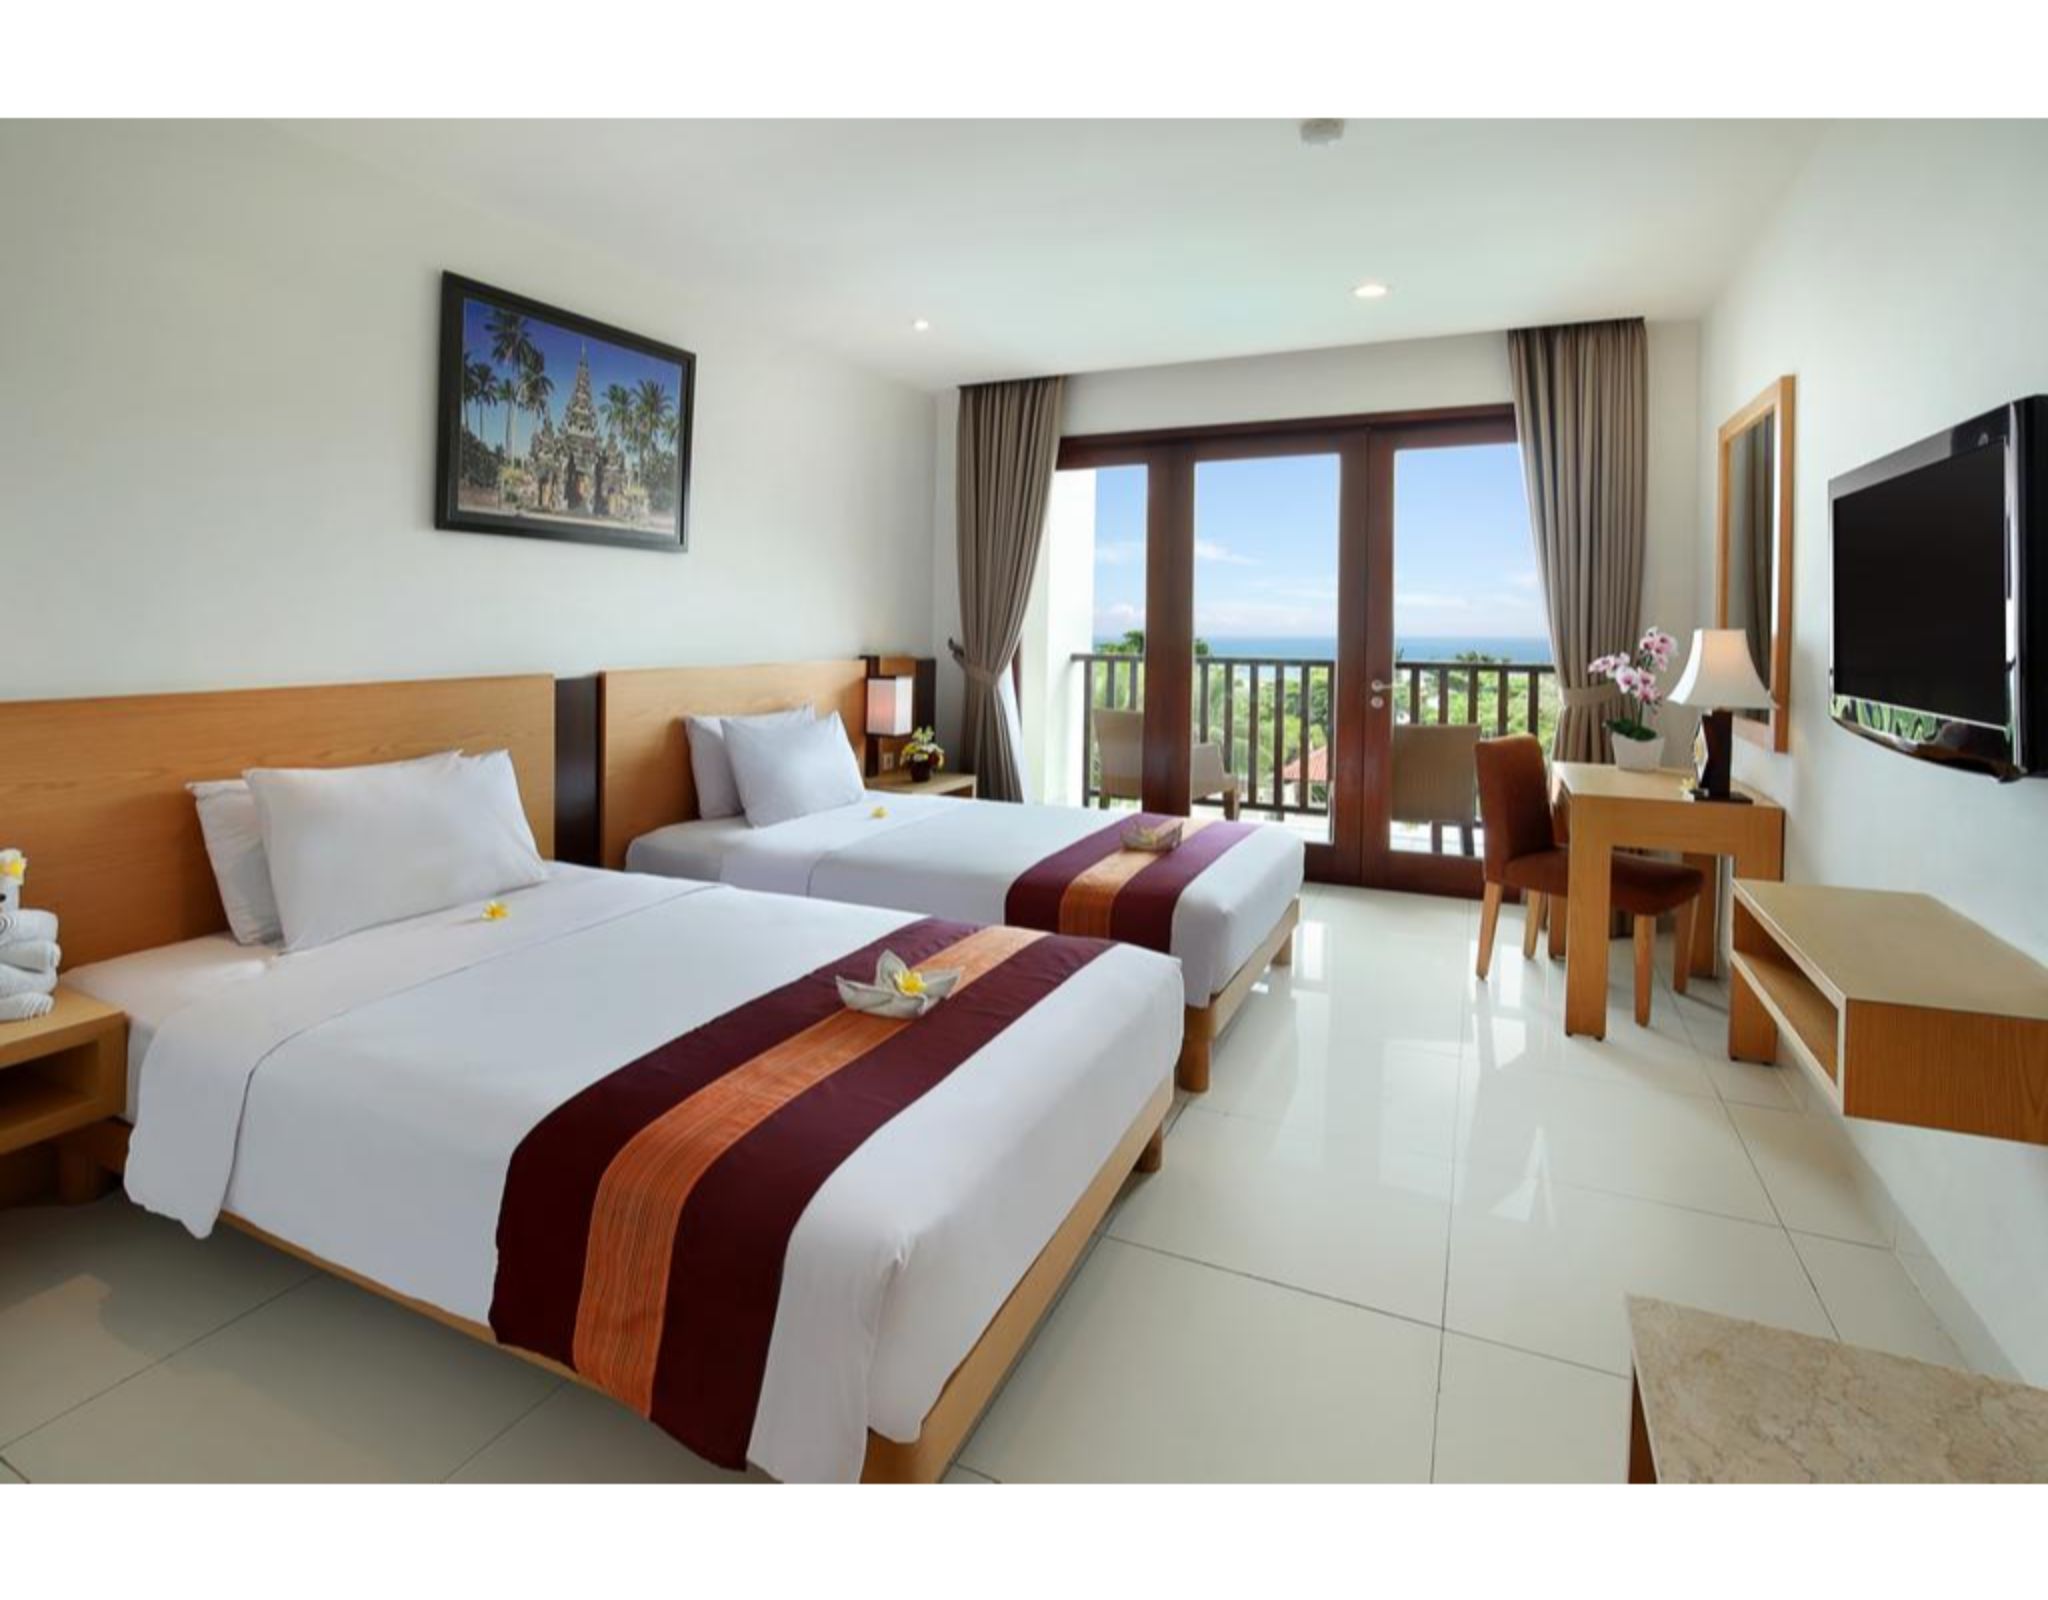 Bali Relaxing Resort & Spa